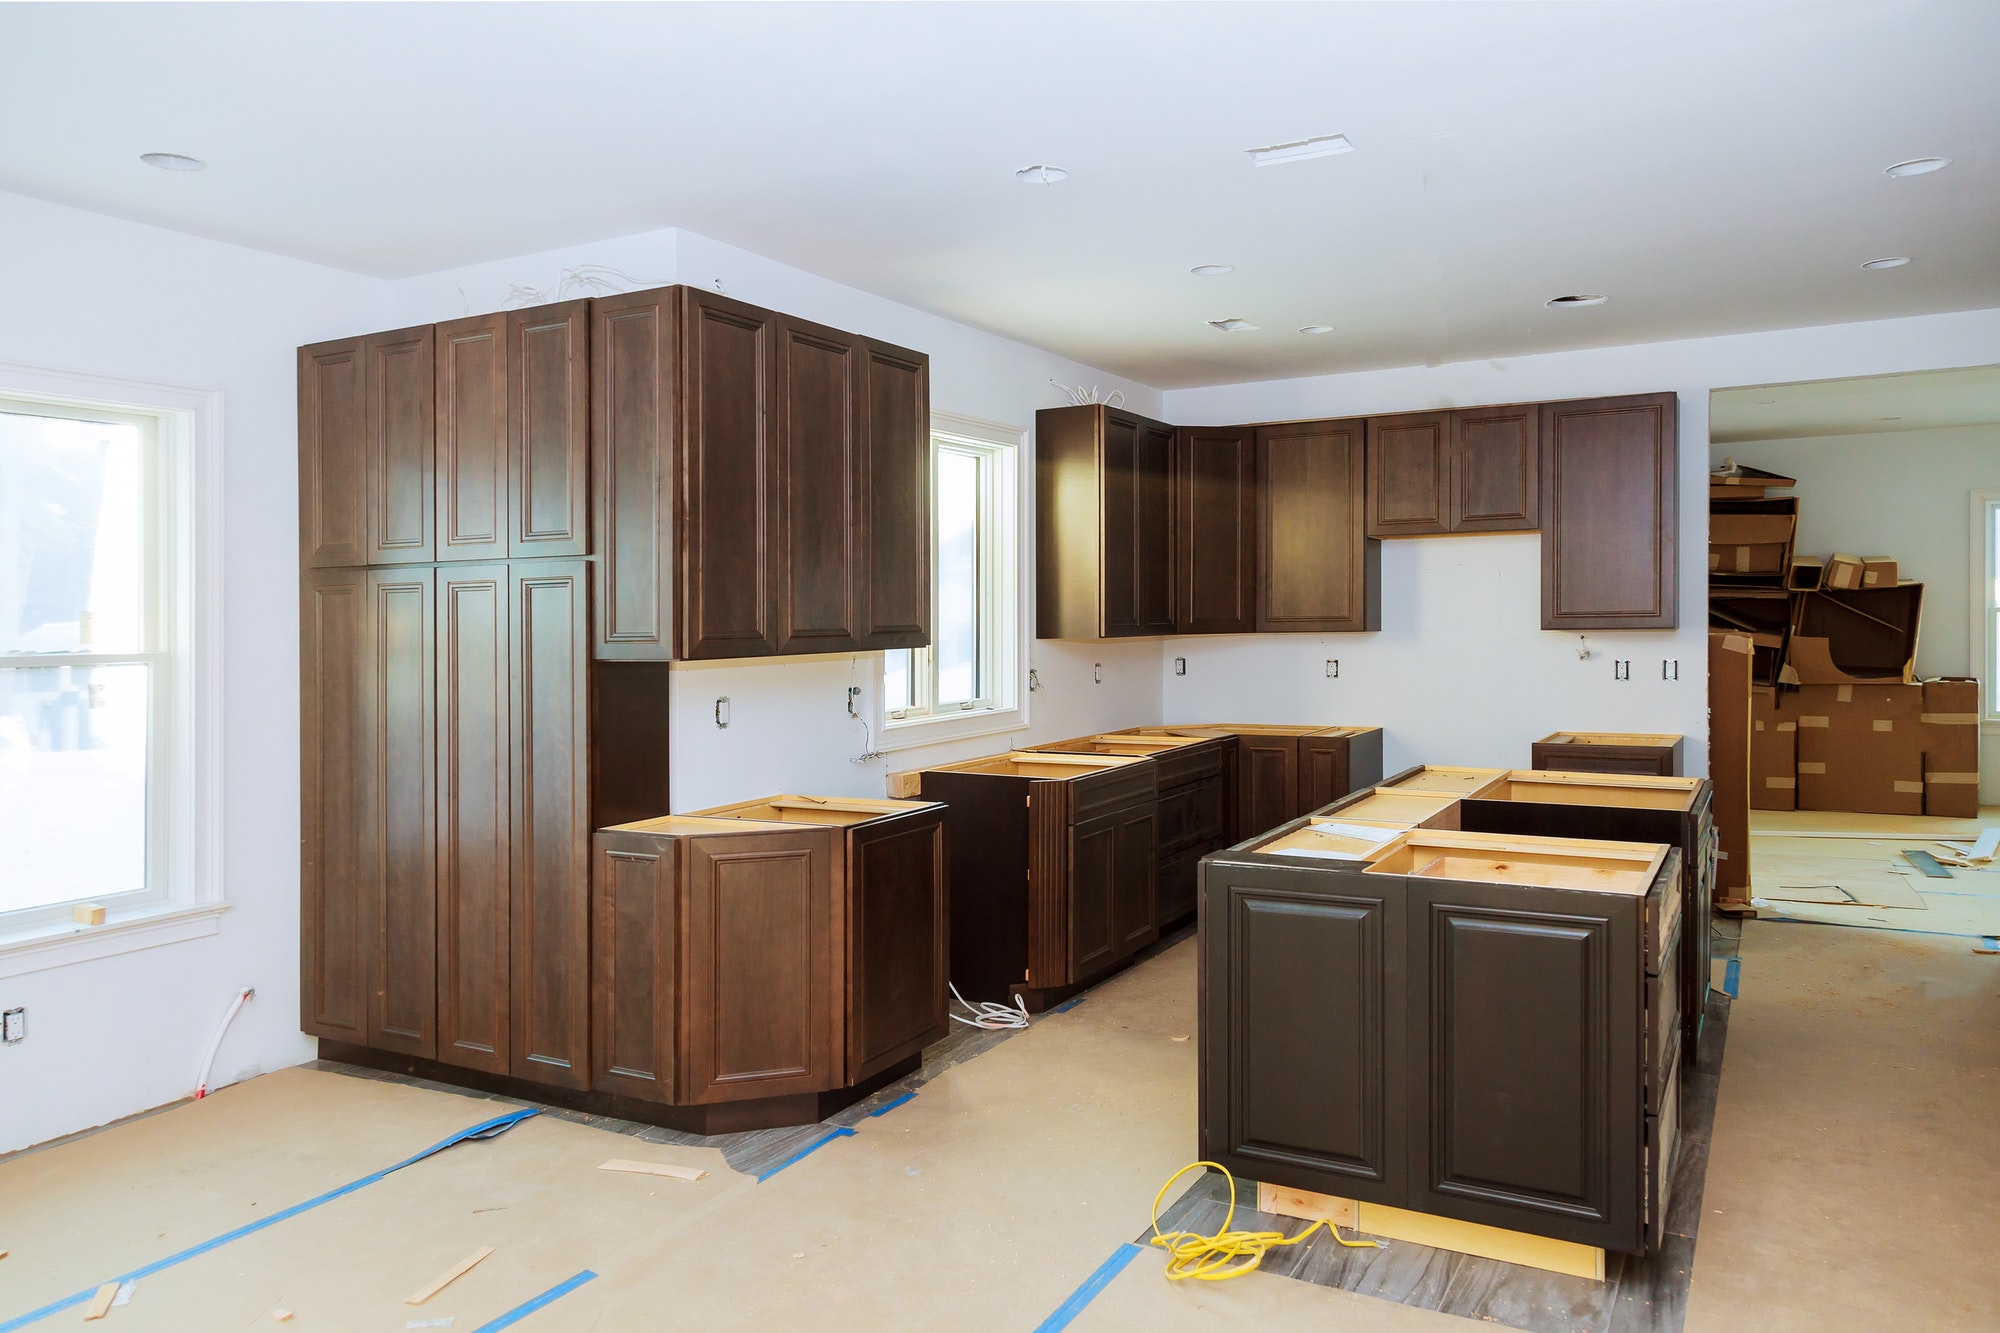 Home improvement remodel modern kitchen interior cabinet